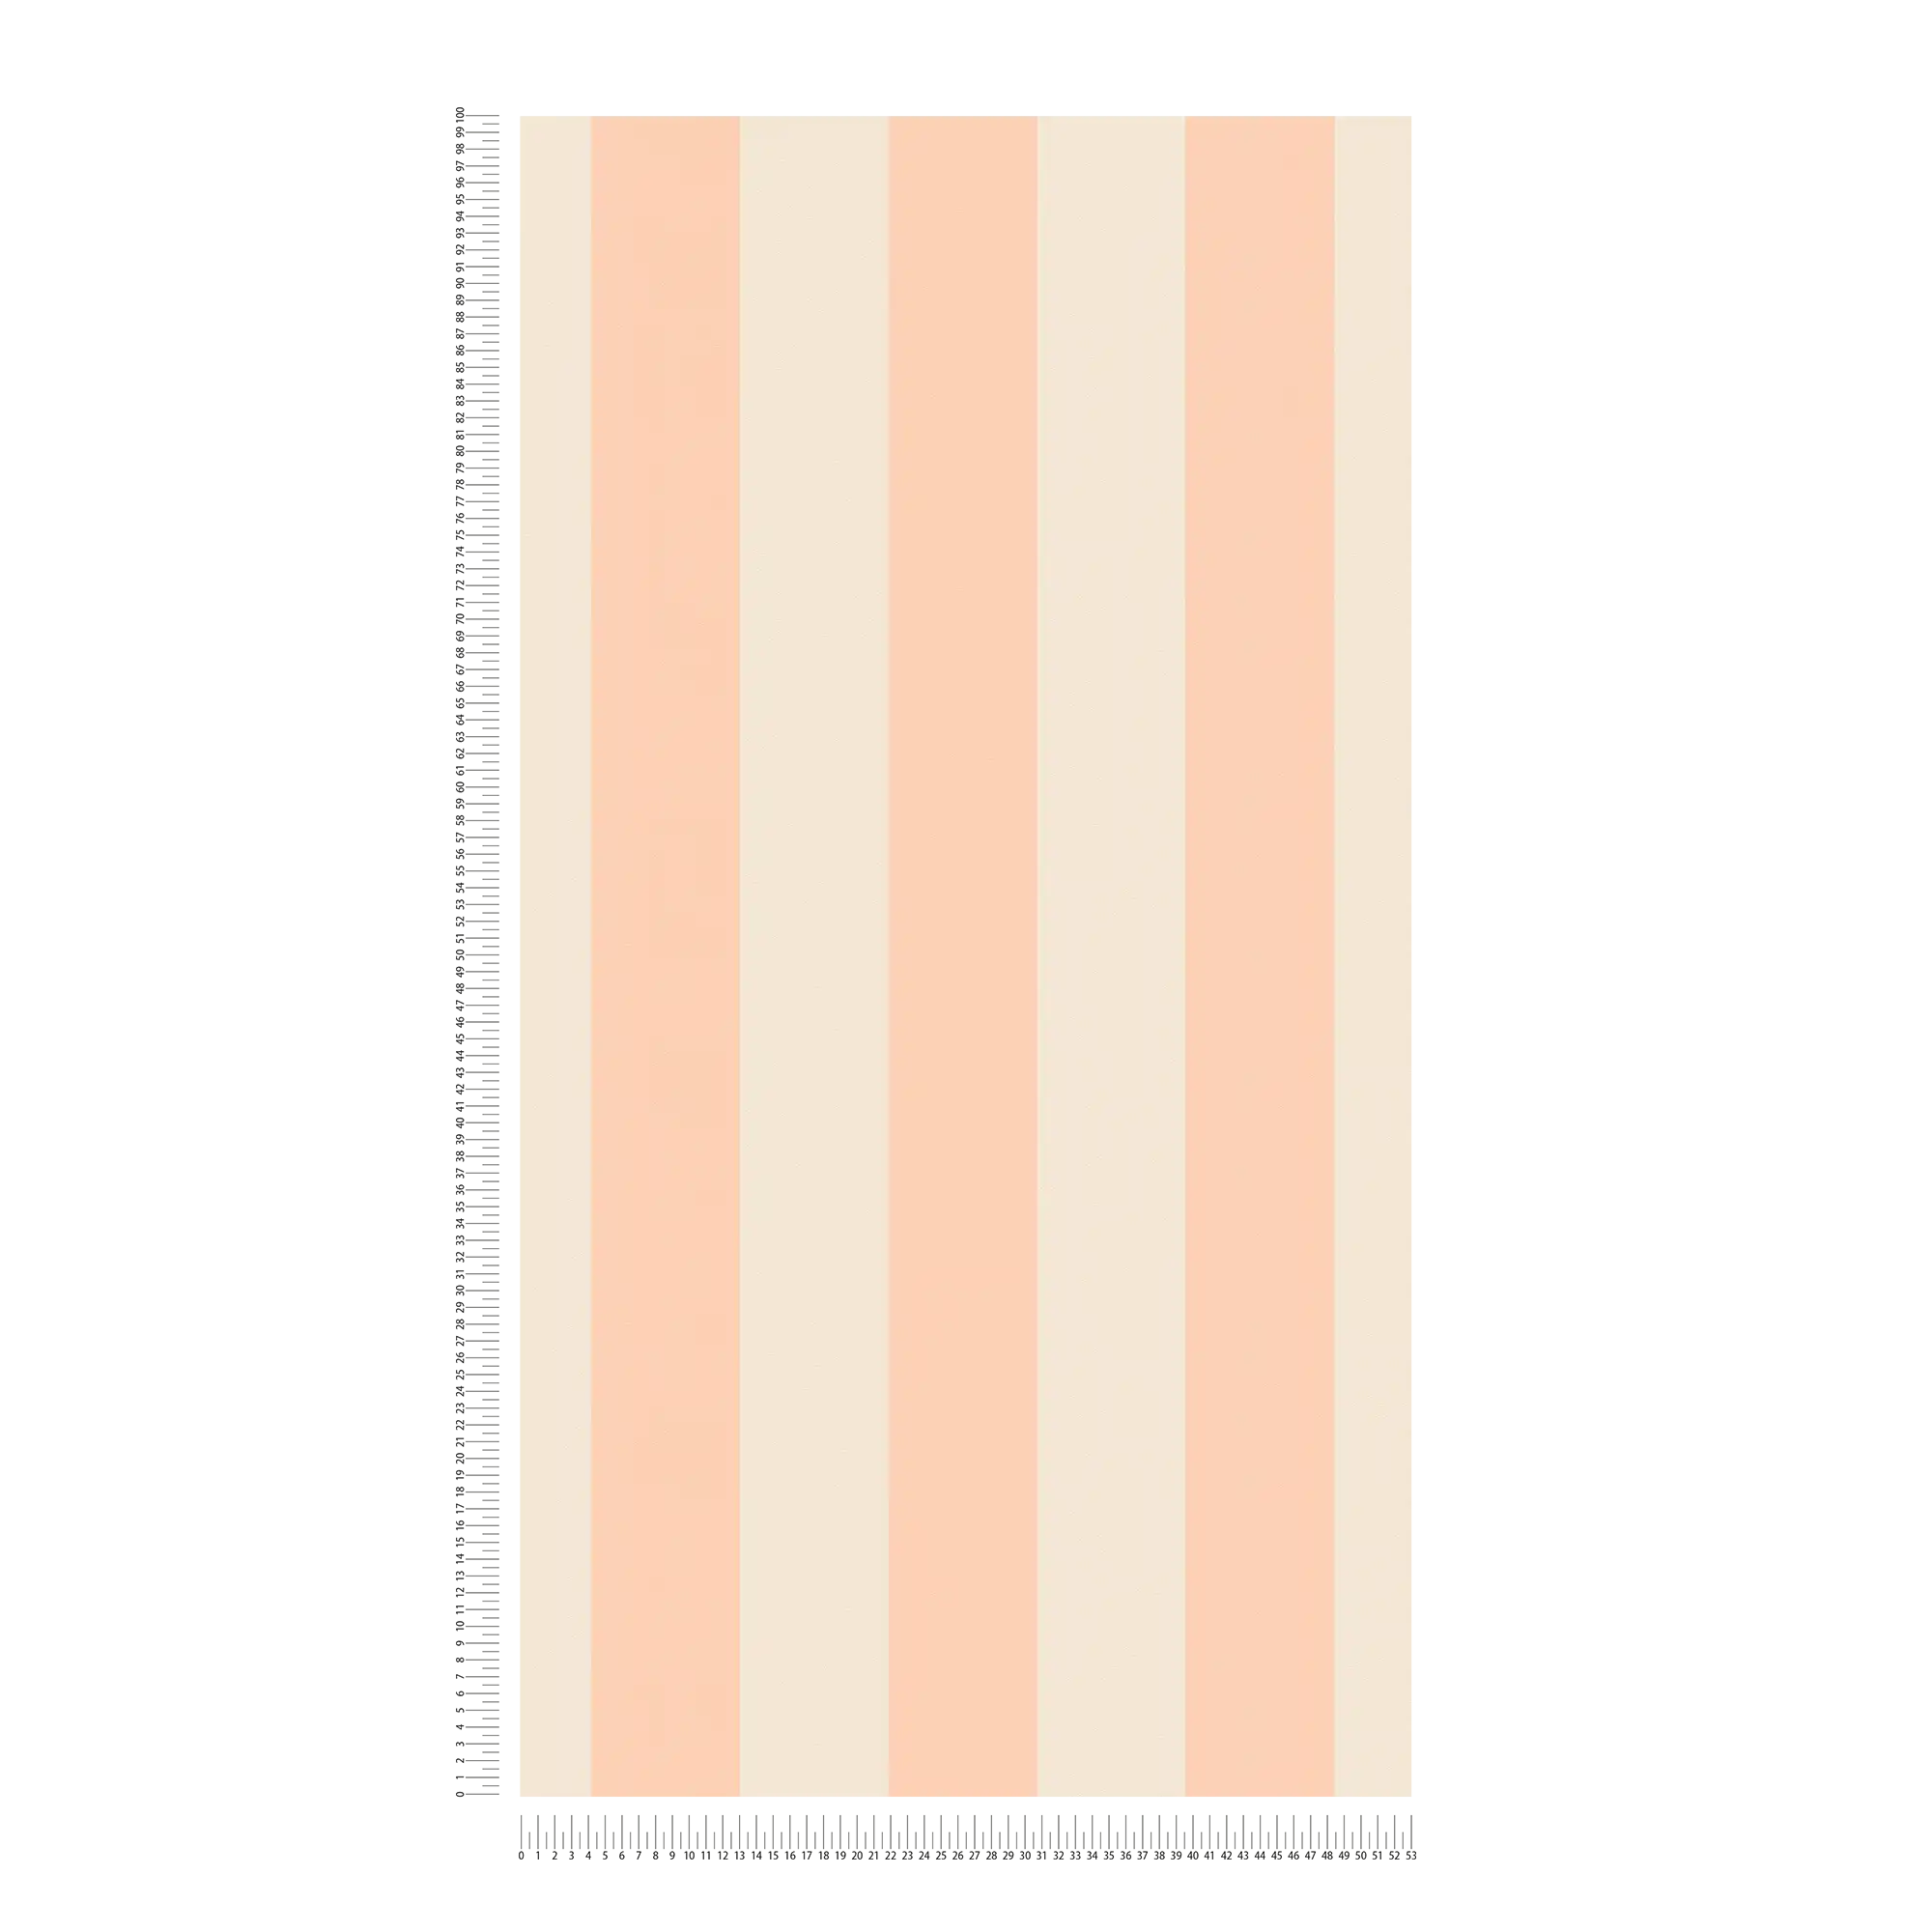             Vliesbehang met blokstrepen in zachte tinten - crème, roze
        